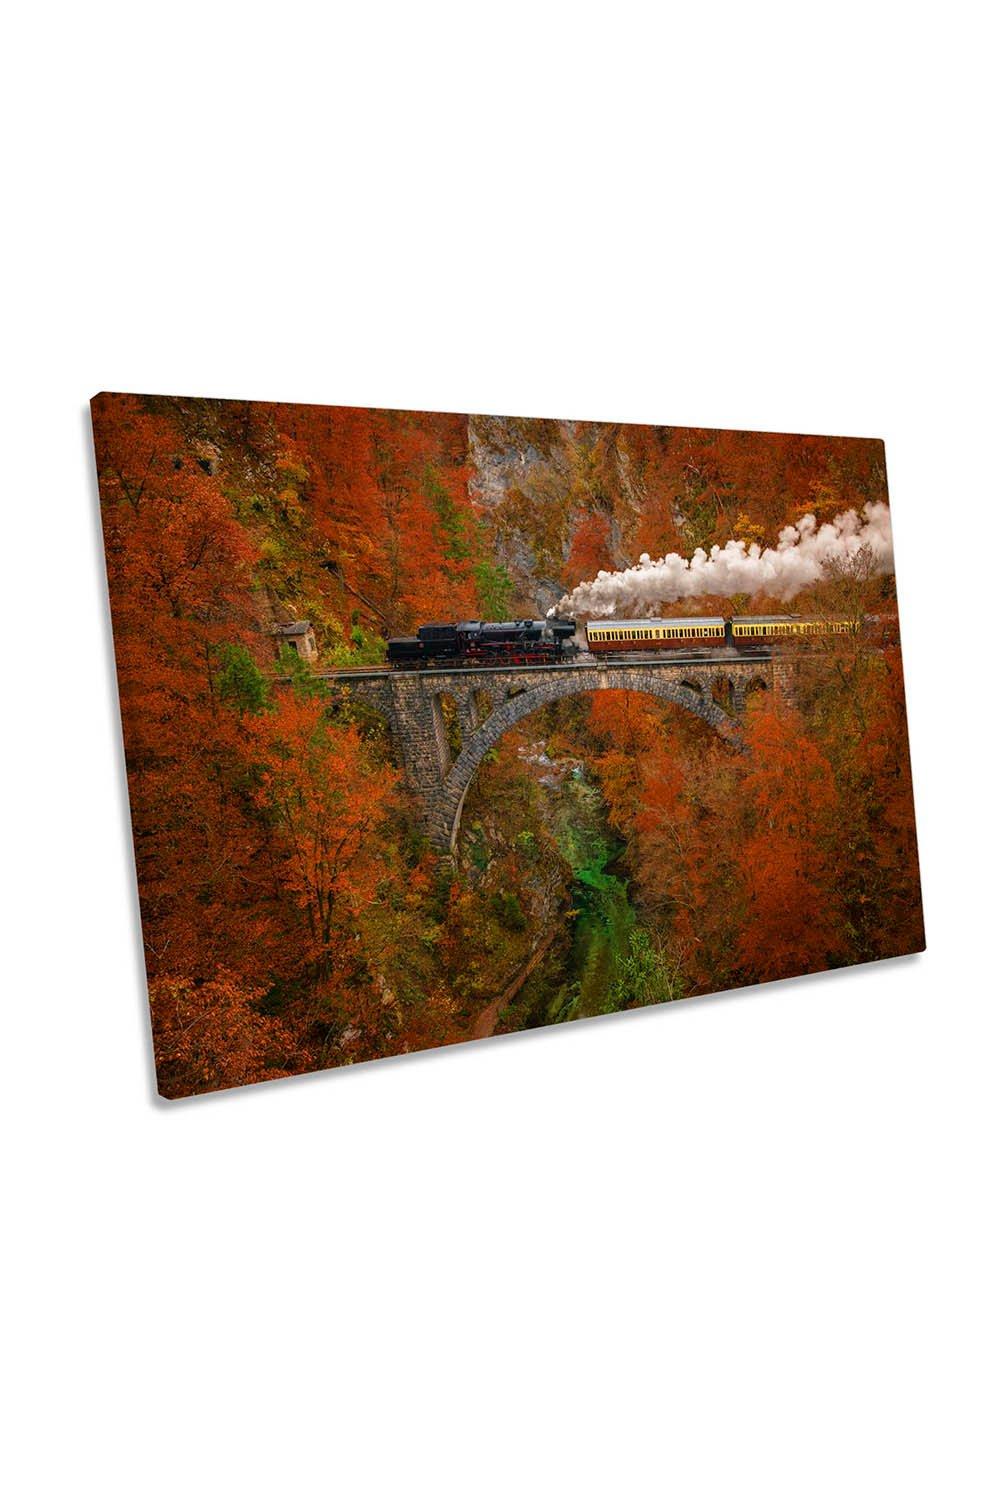 Steam Train Autumn Bridge Canvas Wall Art Picture Print